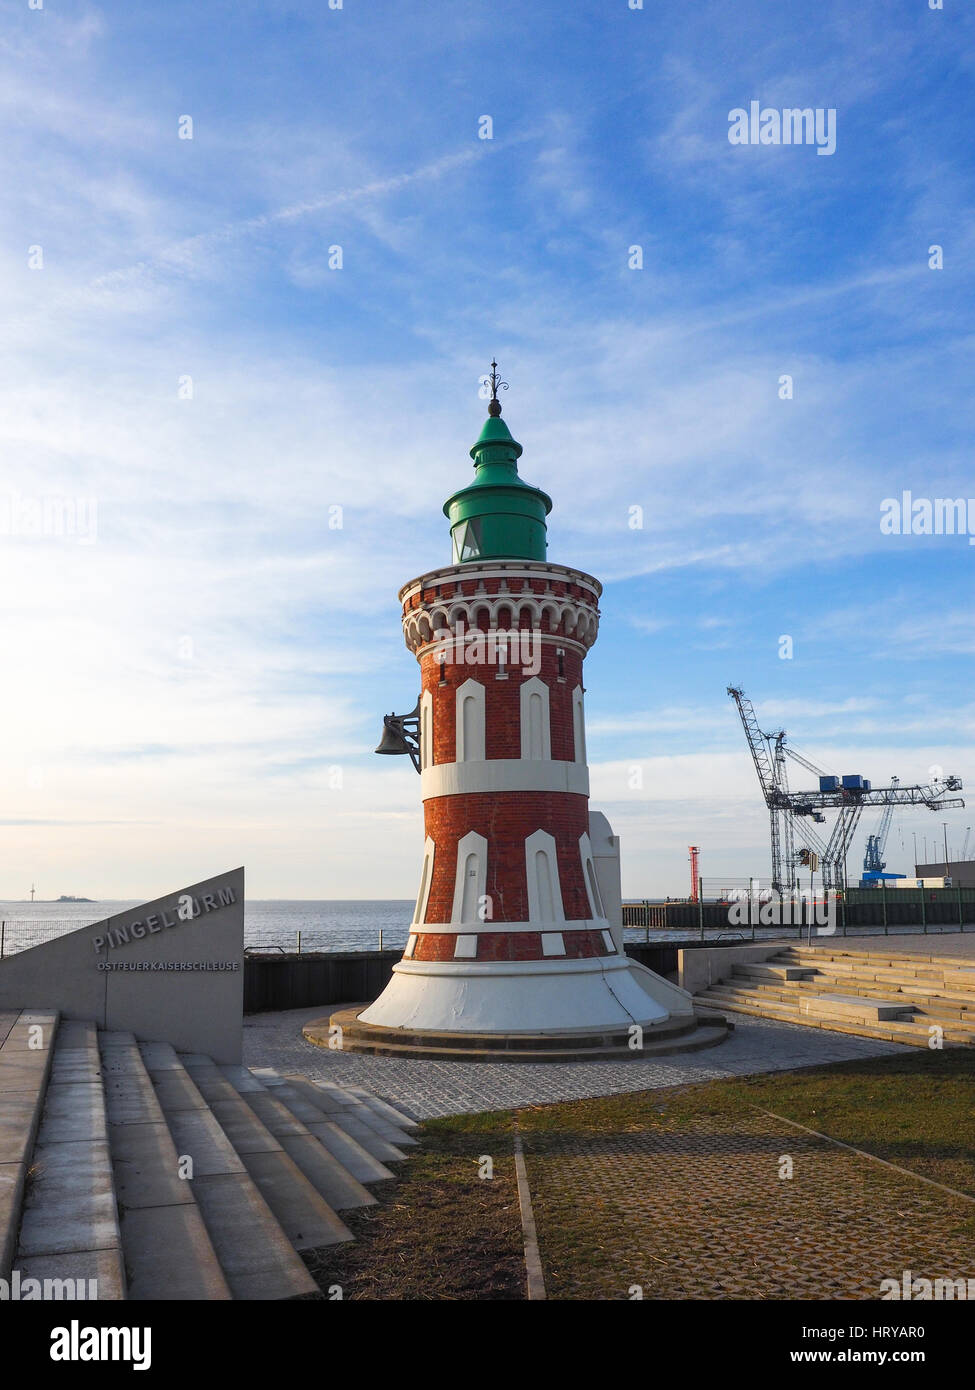 Leuchtturm Pingelturm Bremerhaven, Deutschland Stockfoto